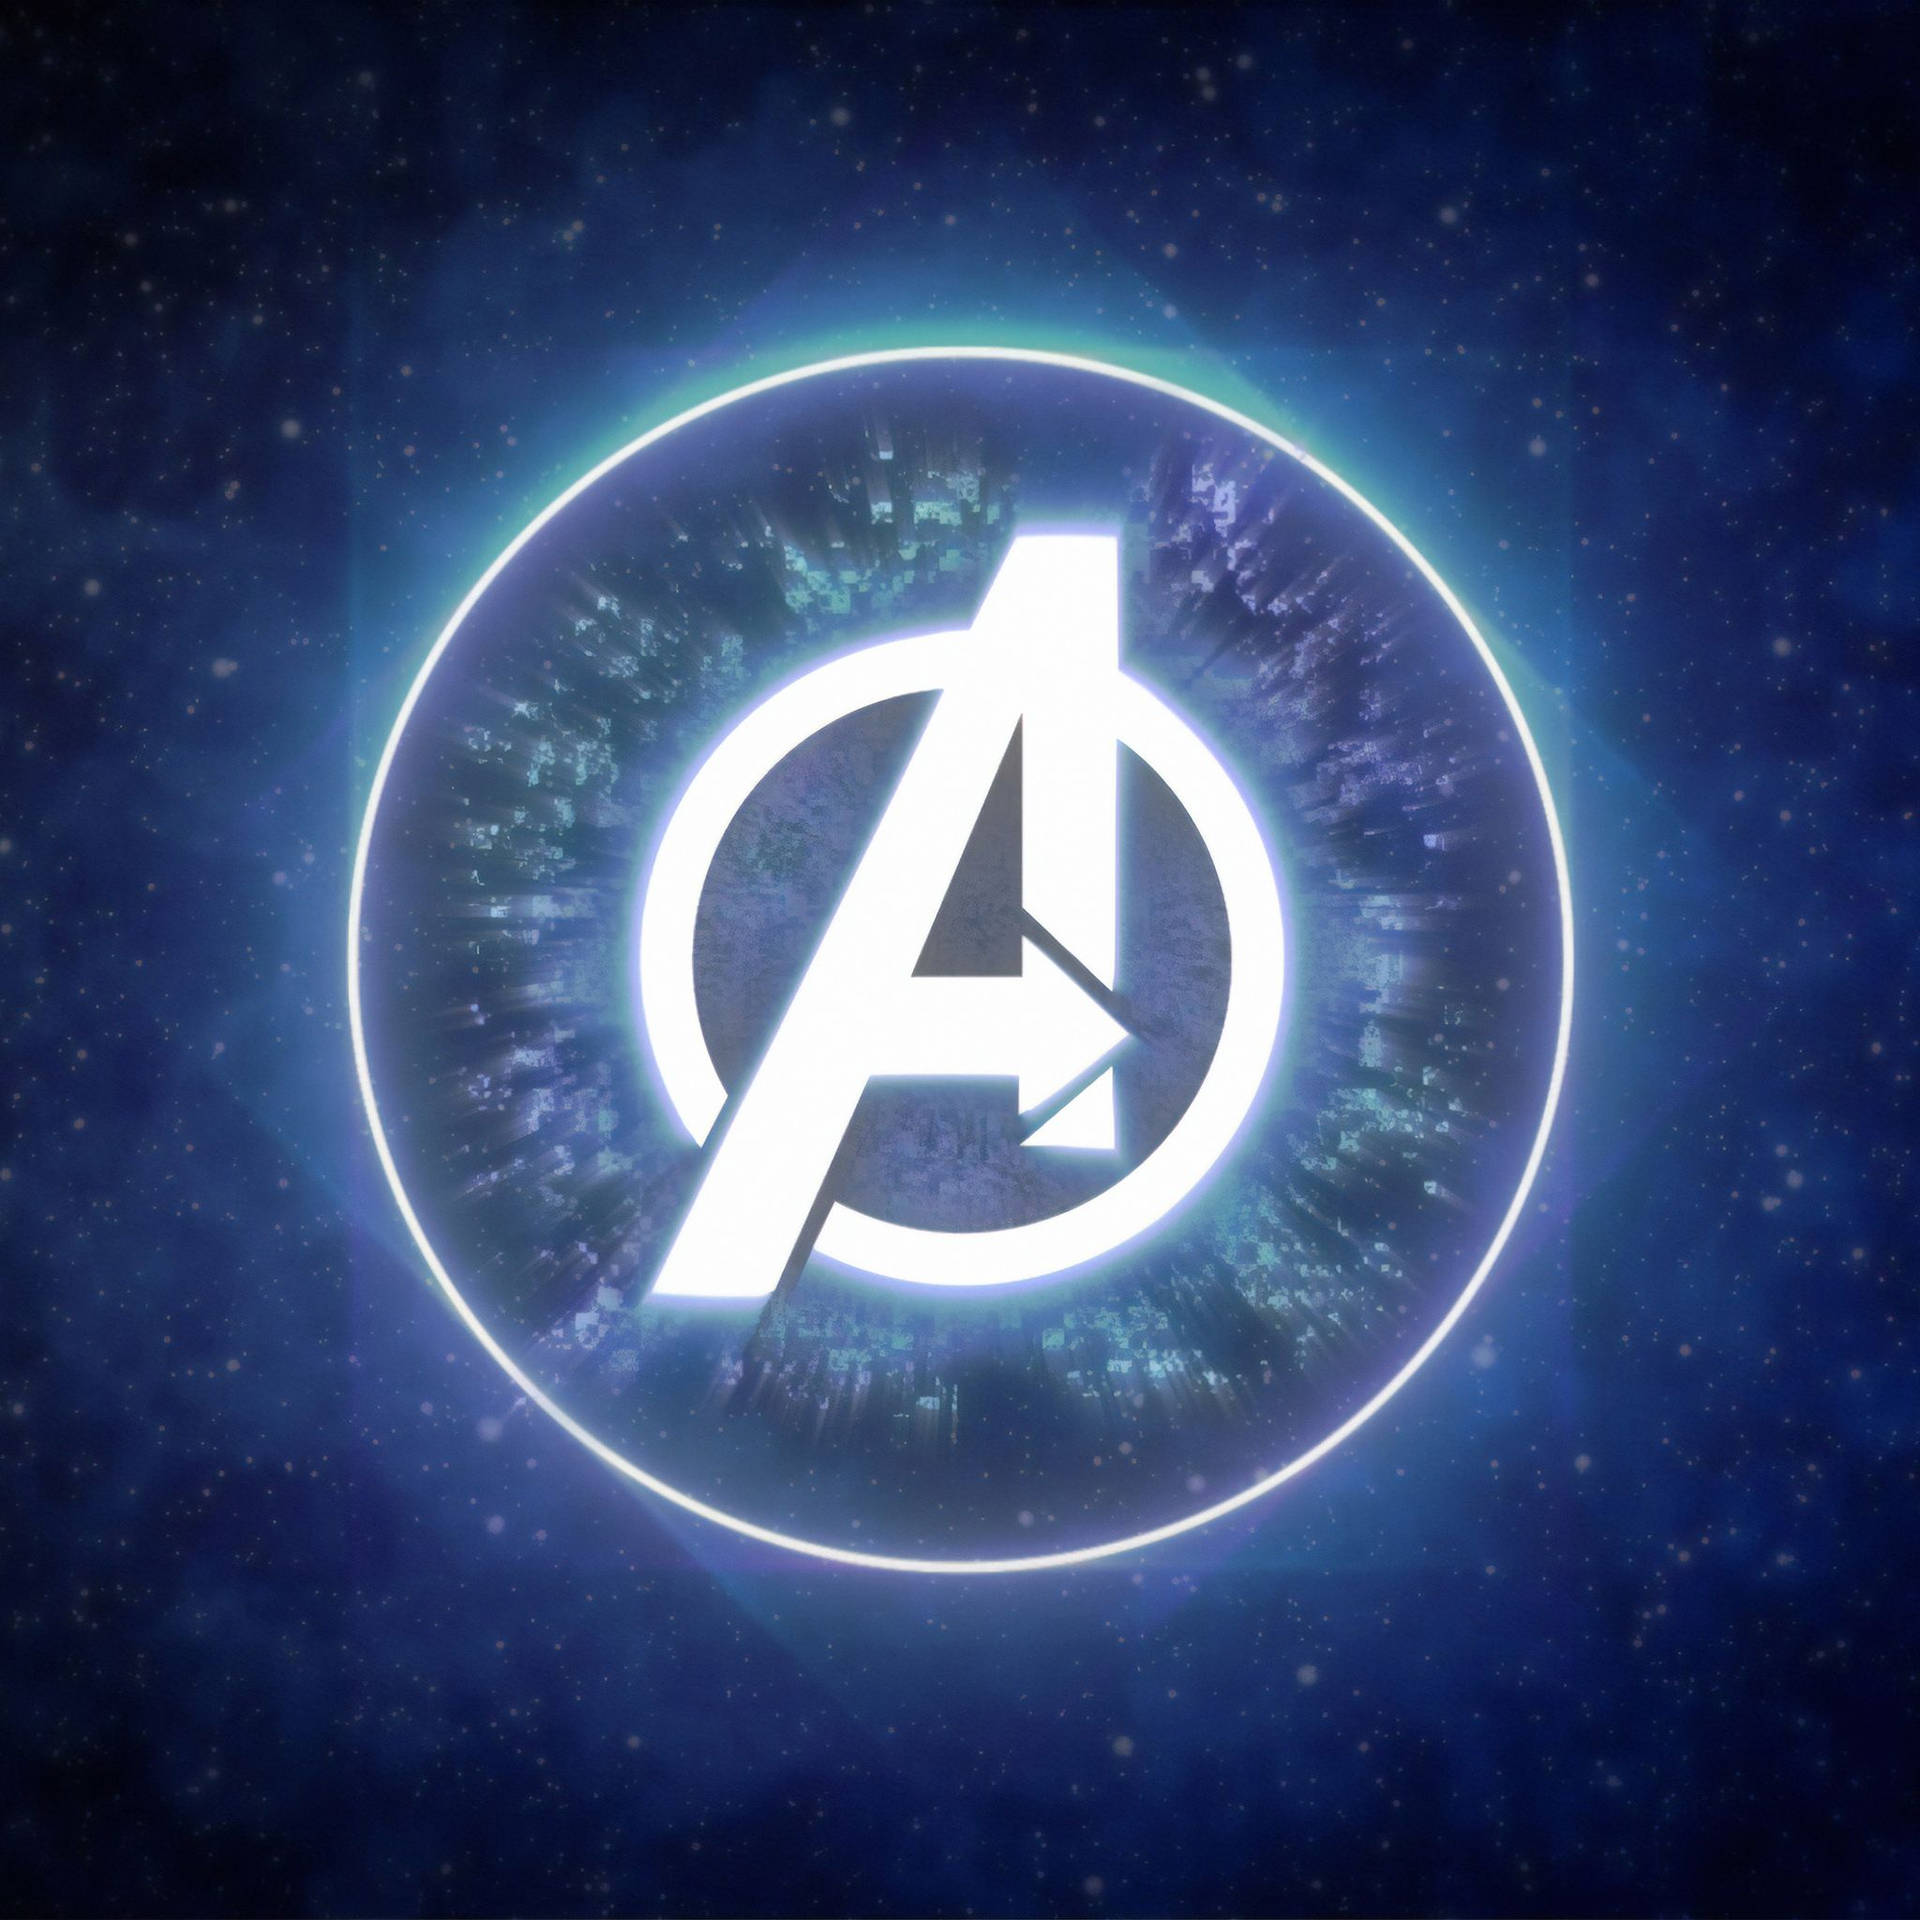 Avengers Logo In The Eye